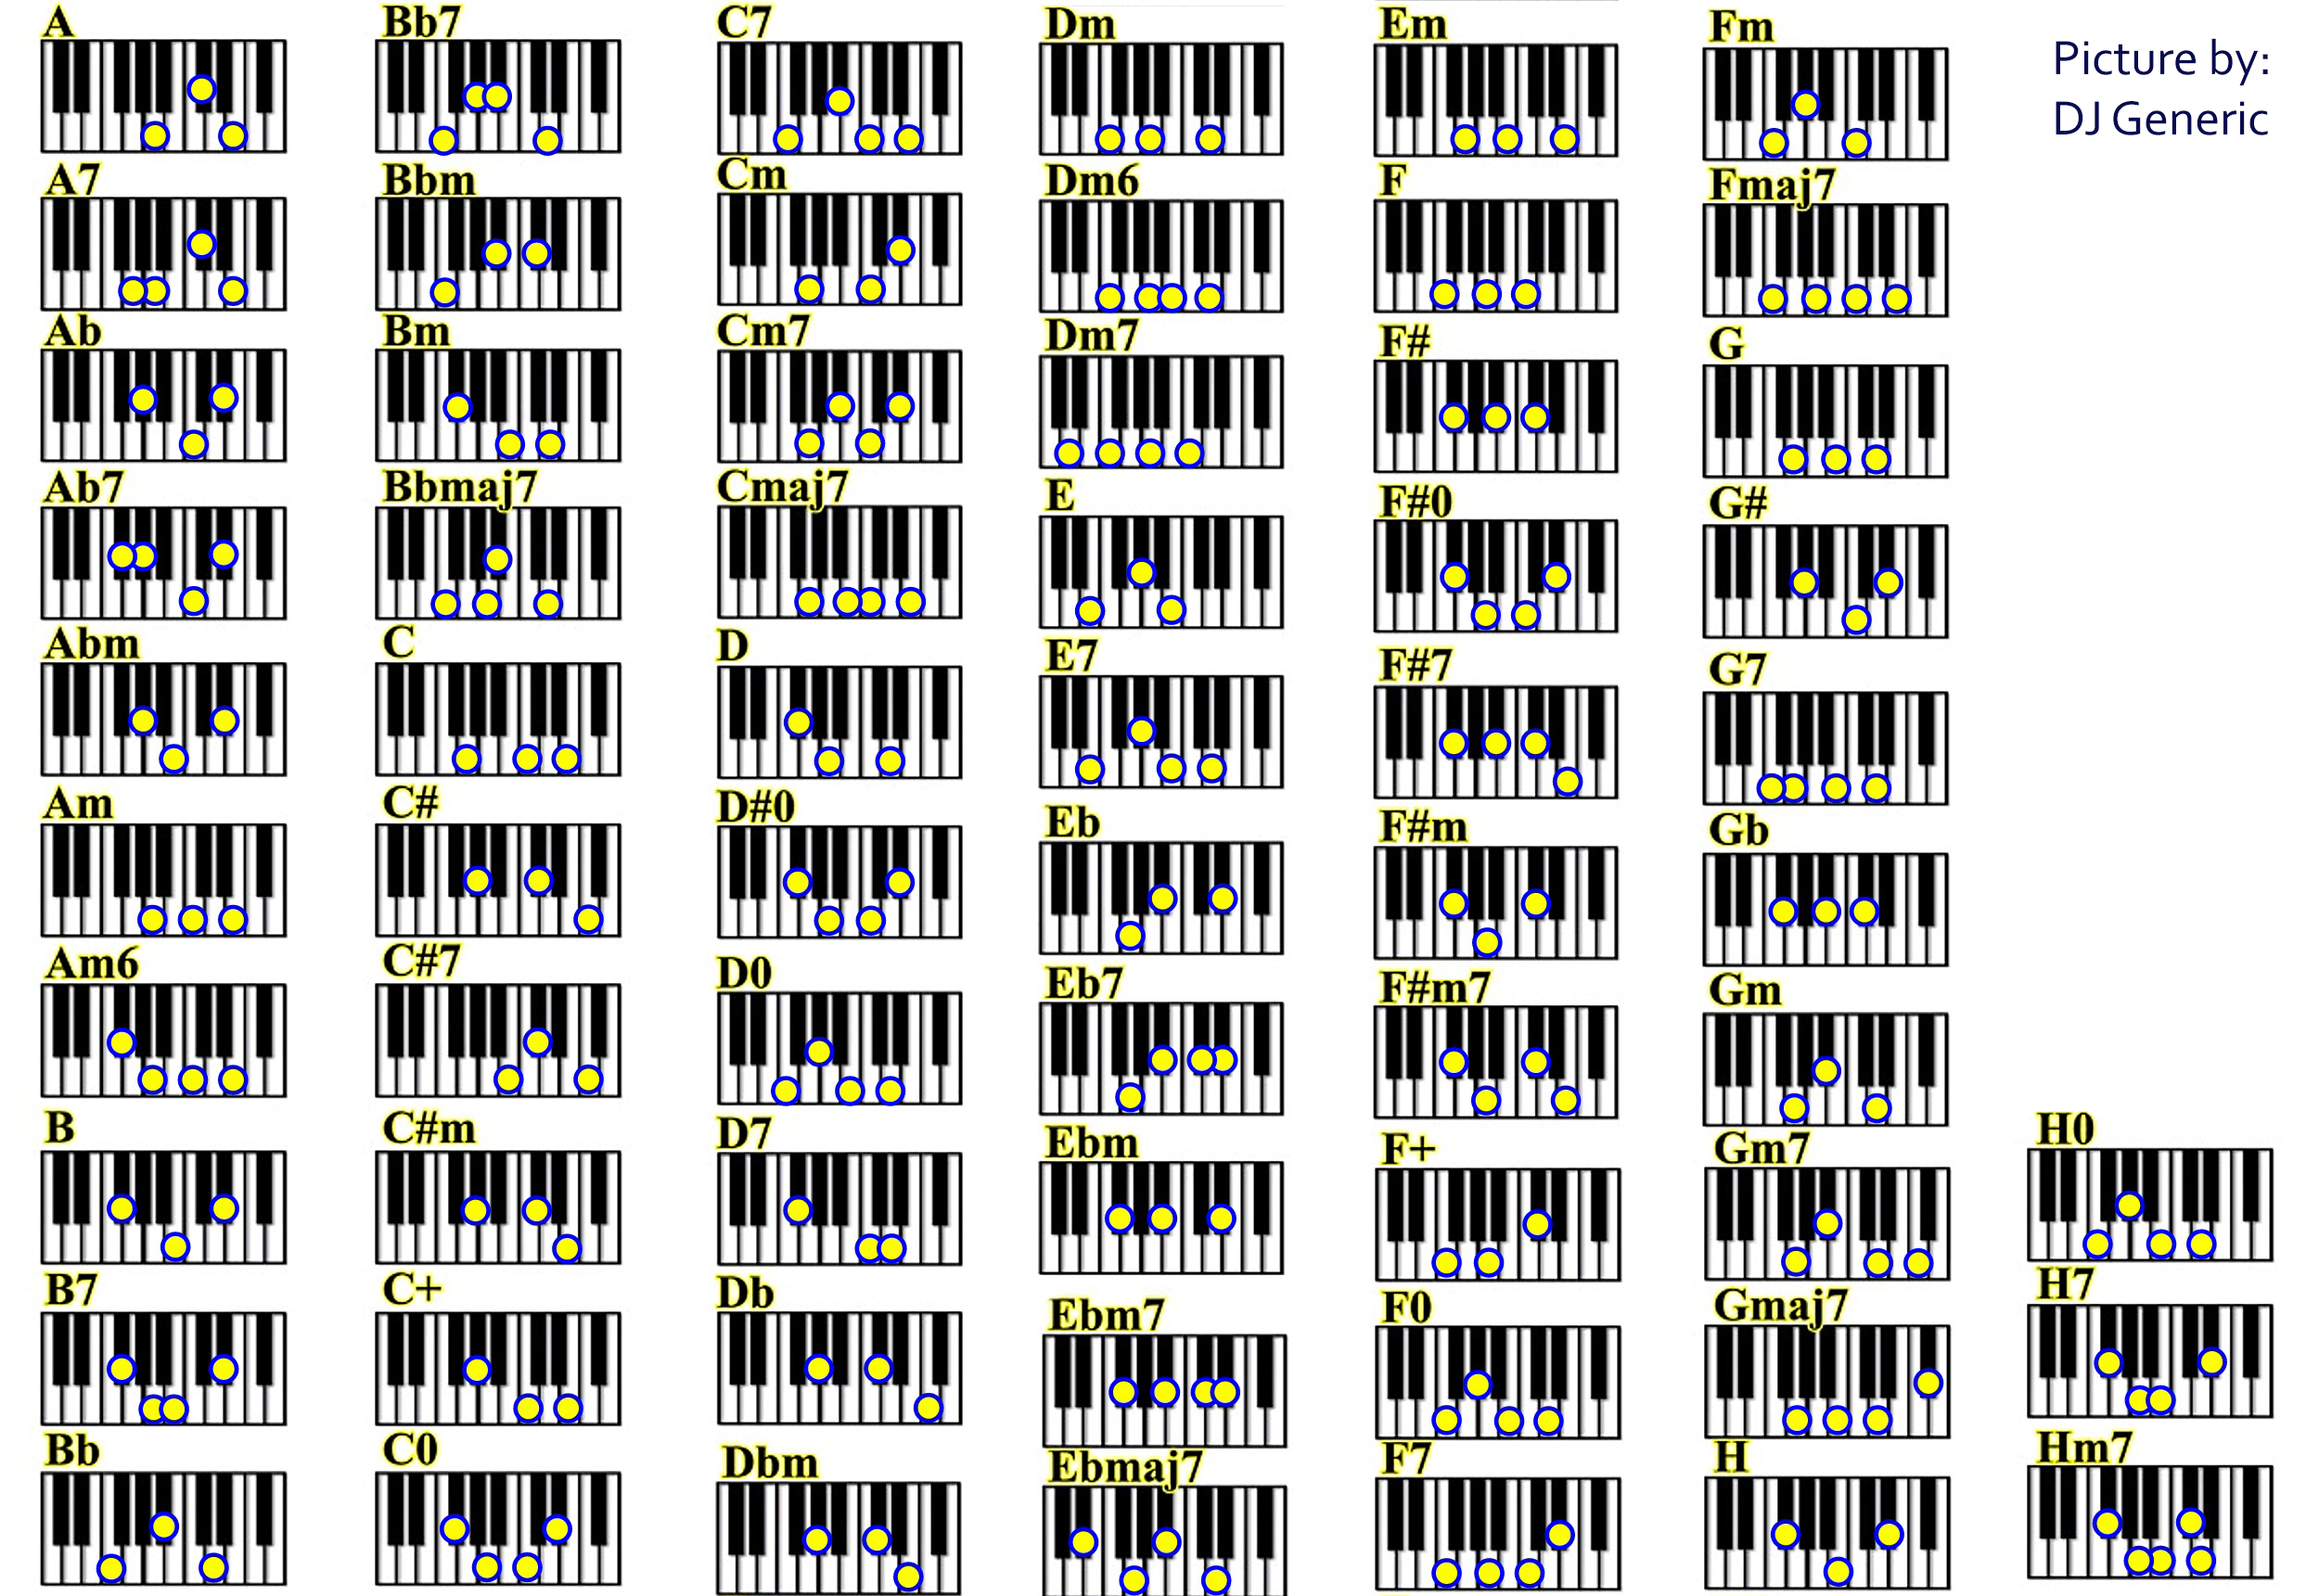 Аккорд h7 на пианино. Аккорд h7 на синтезаторе. Am9 Аккорд на пианино. Аккорд e7 на пианино. Аккордов майне